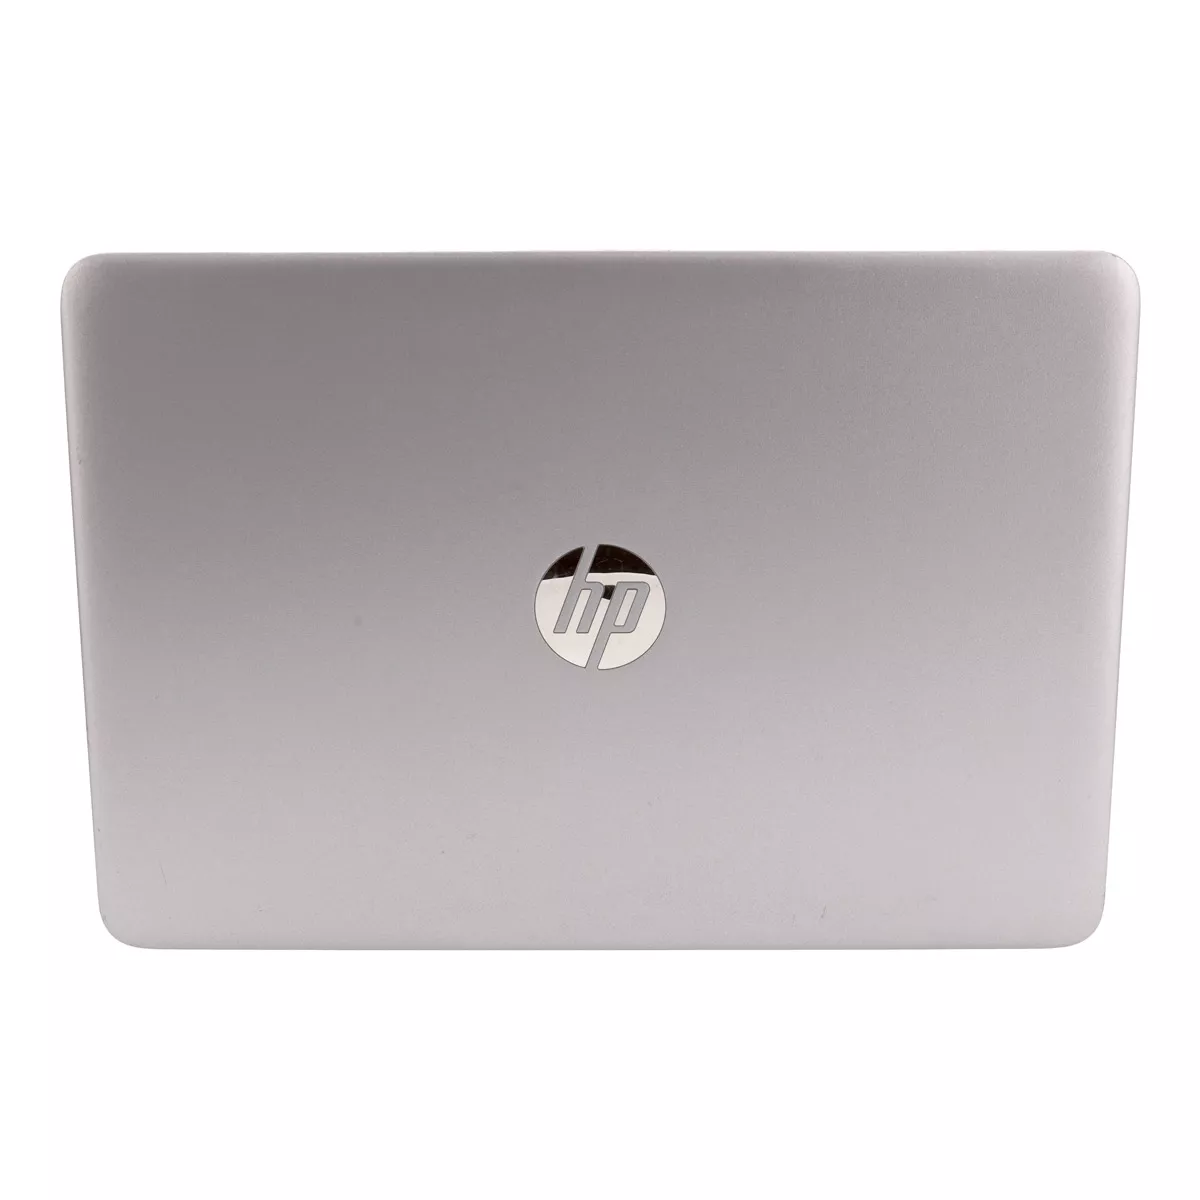 HP EliteBook 840 G4 Core i5 7300U Full-HD 8 GB DDR4 240 GB M.2 SSD A